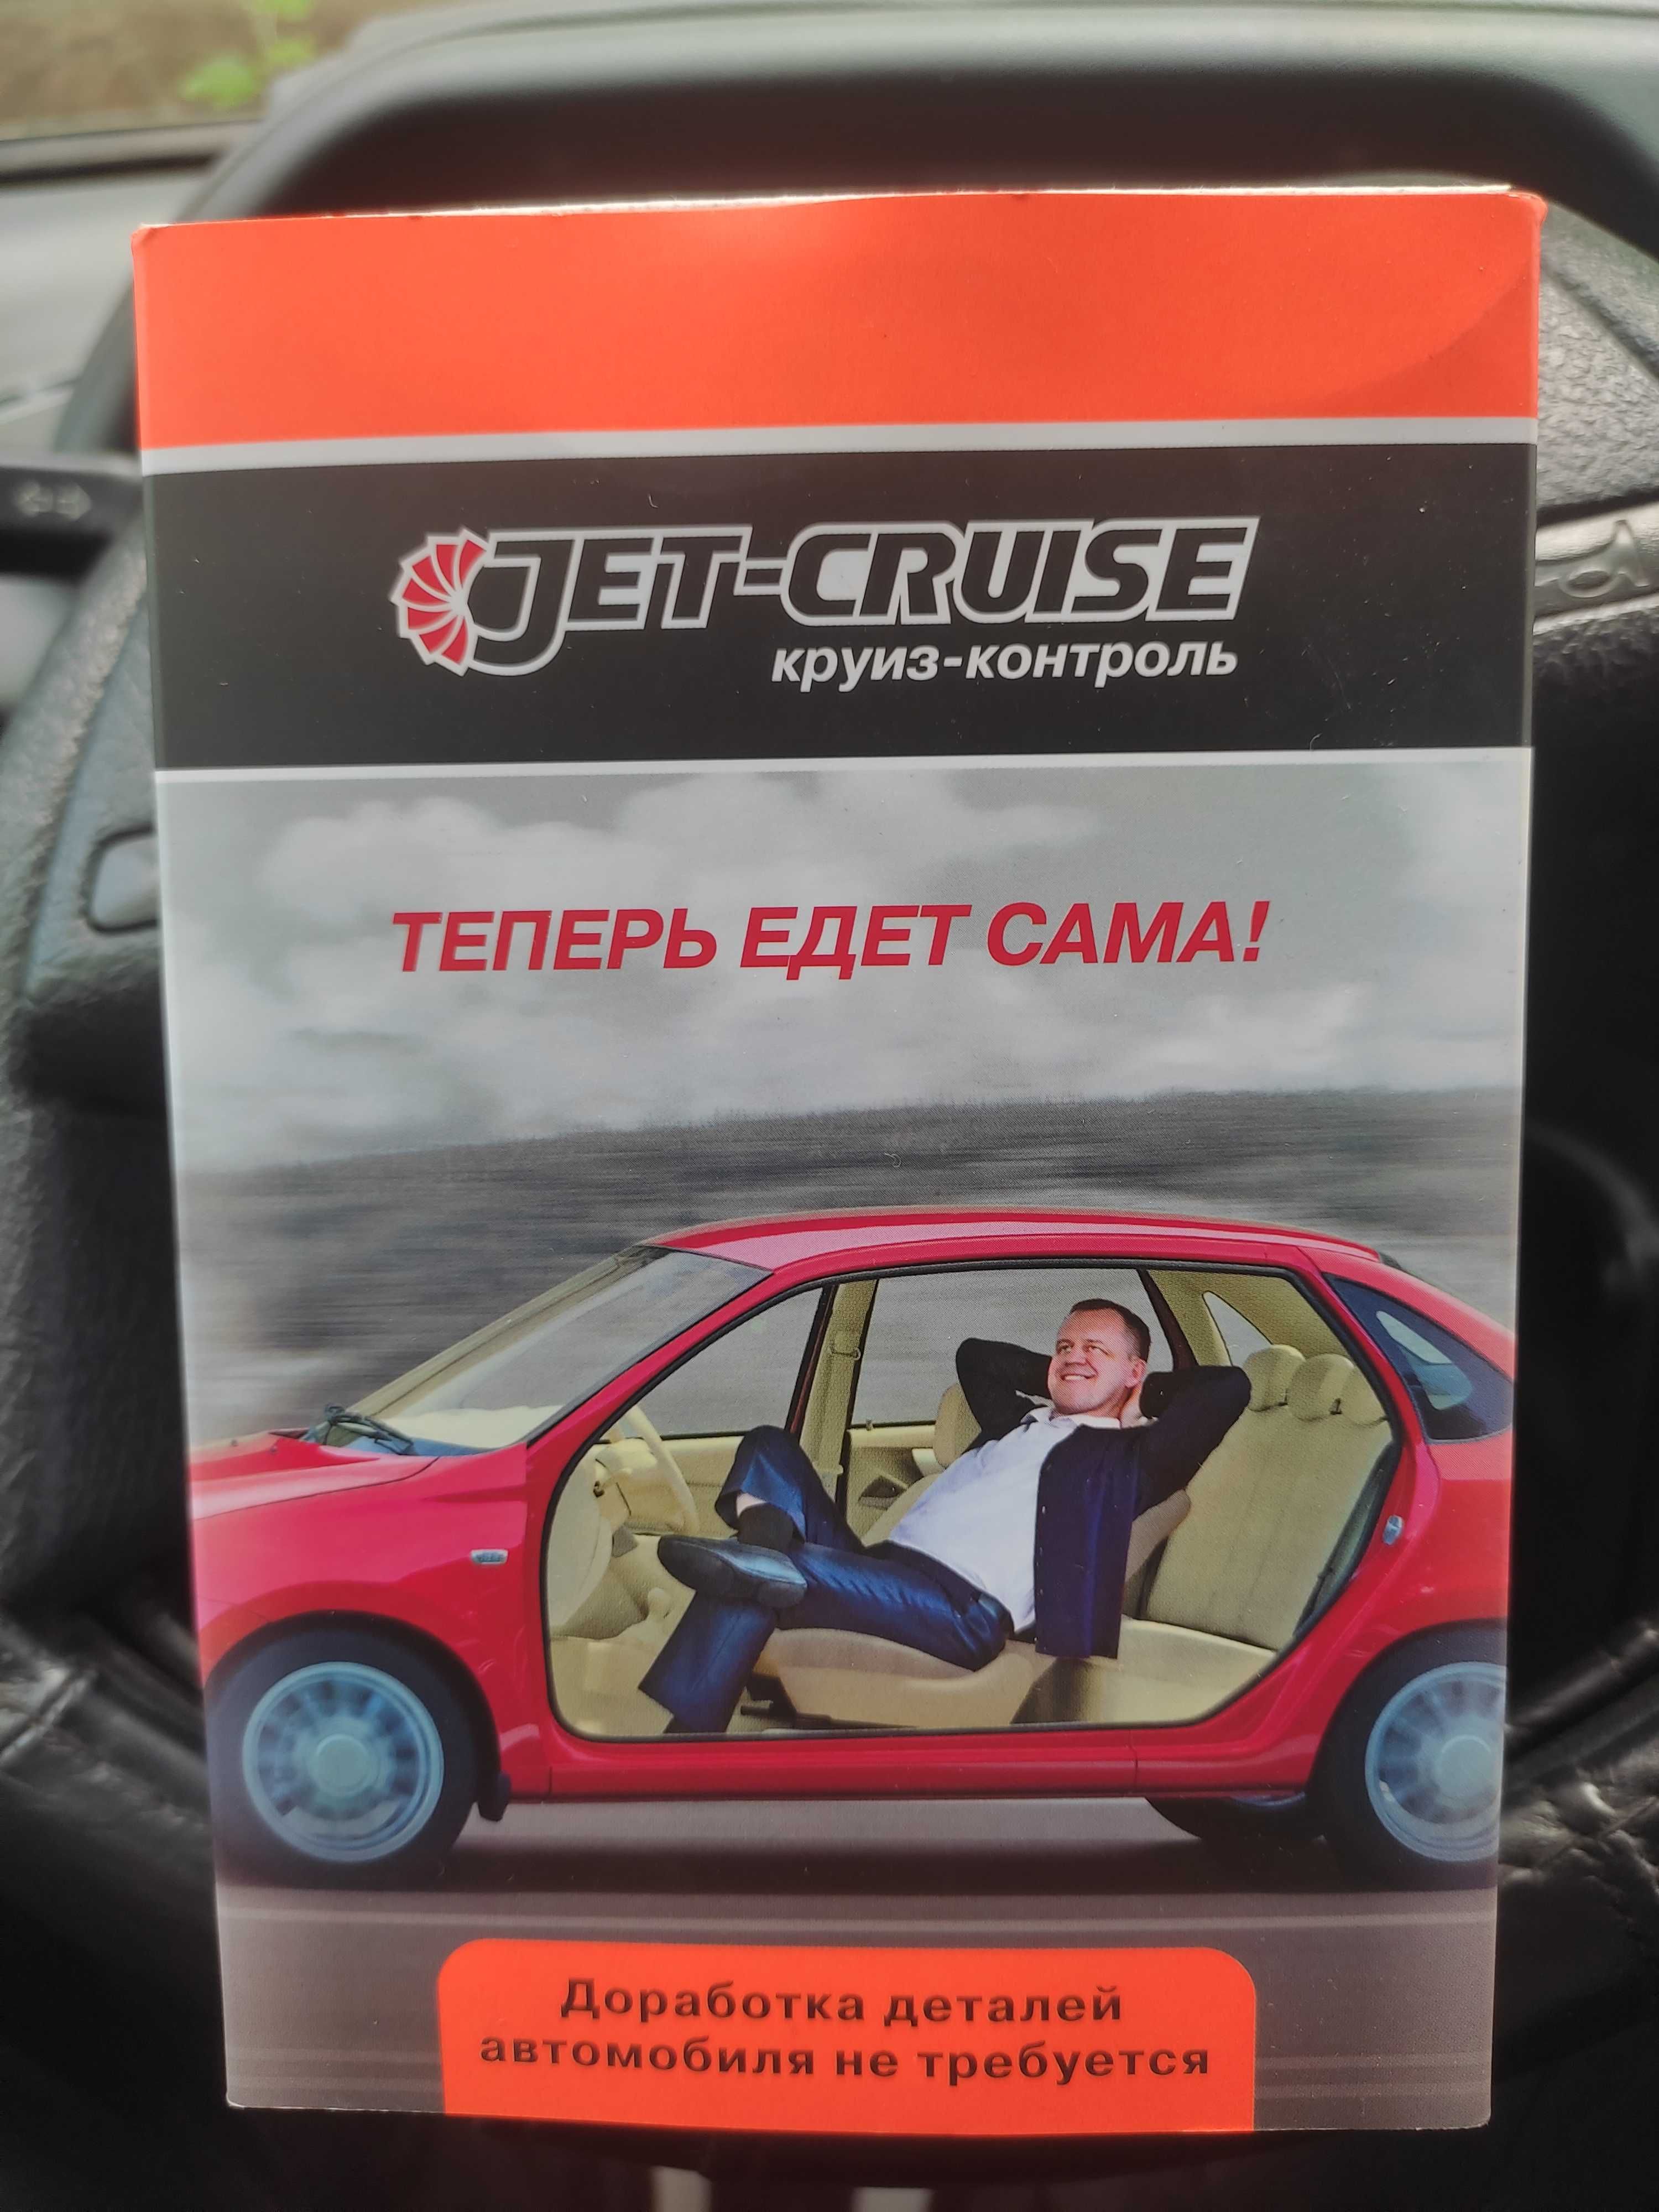 Круиз-контроль JET-CRUISE DL на автомобили Лада с Е-газом купить в магазине Автовольт